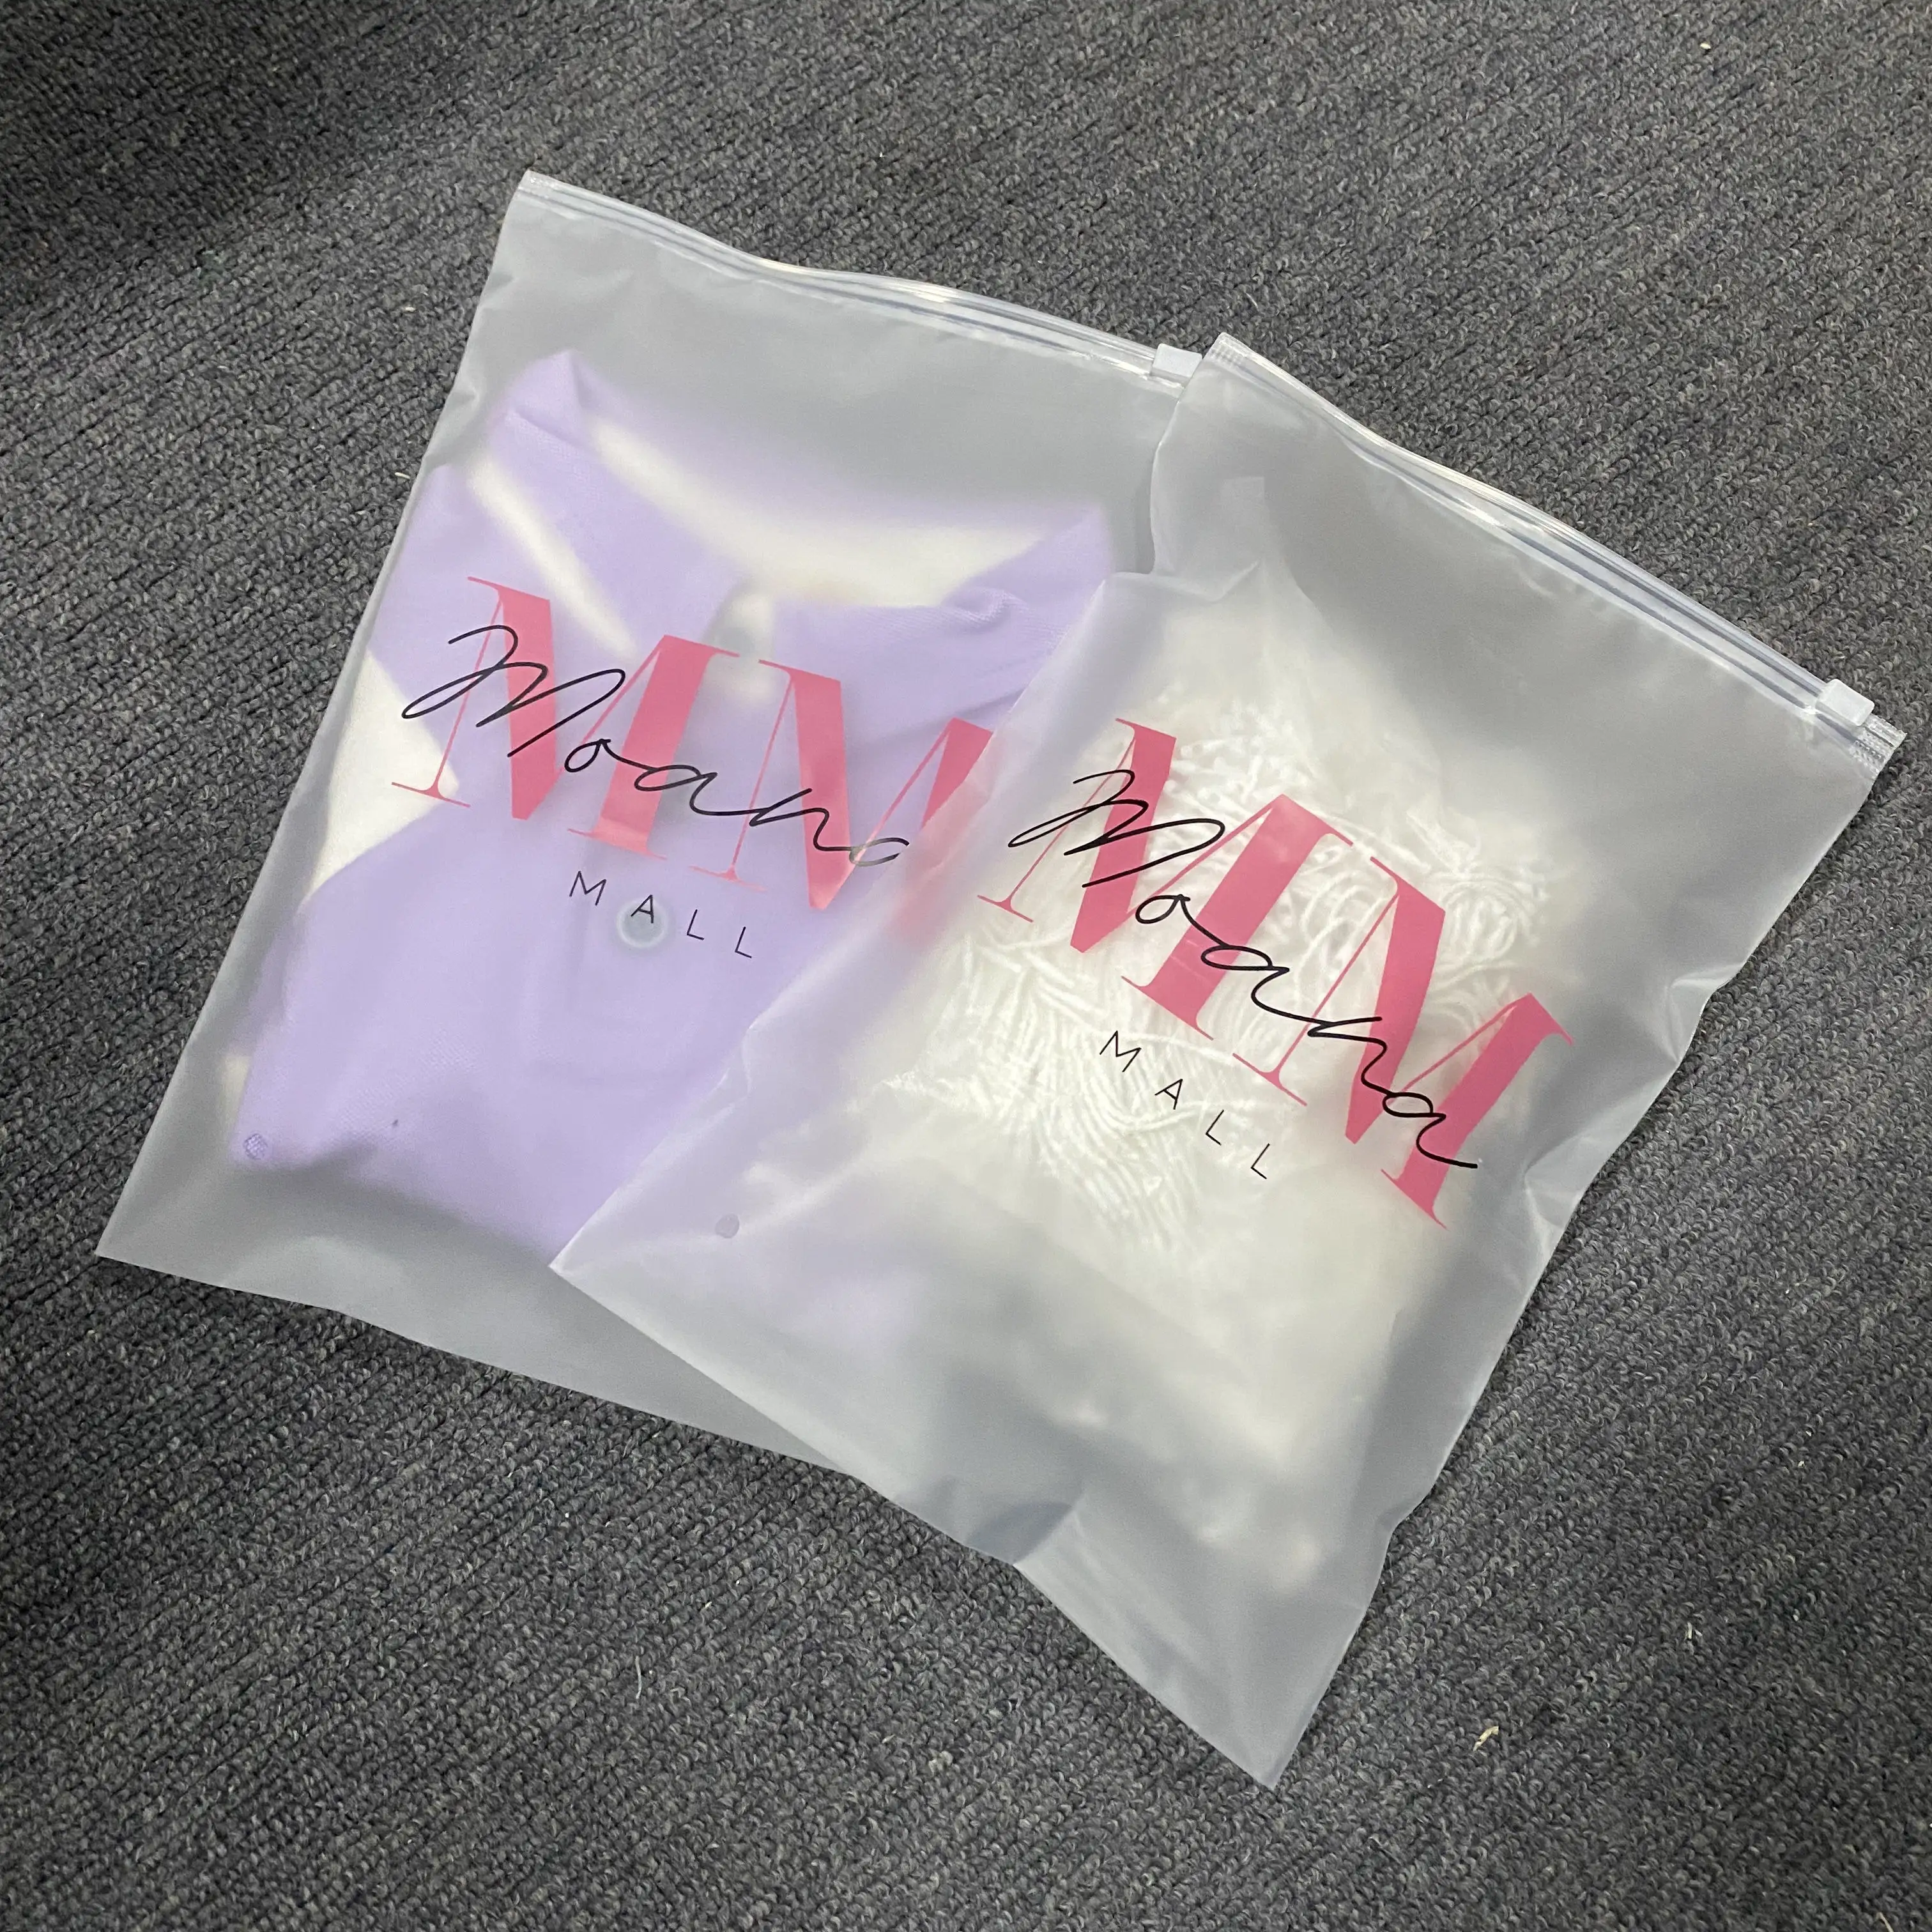 Hot Selling Matte Transparent PE Reiß verschluss Wieder versch ließbare Kleidung Verpackung Frosted Plastic Ziplock Bag